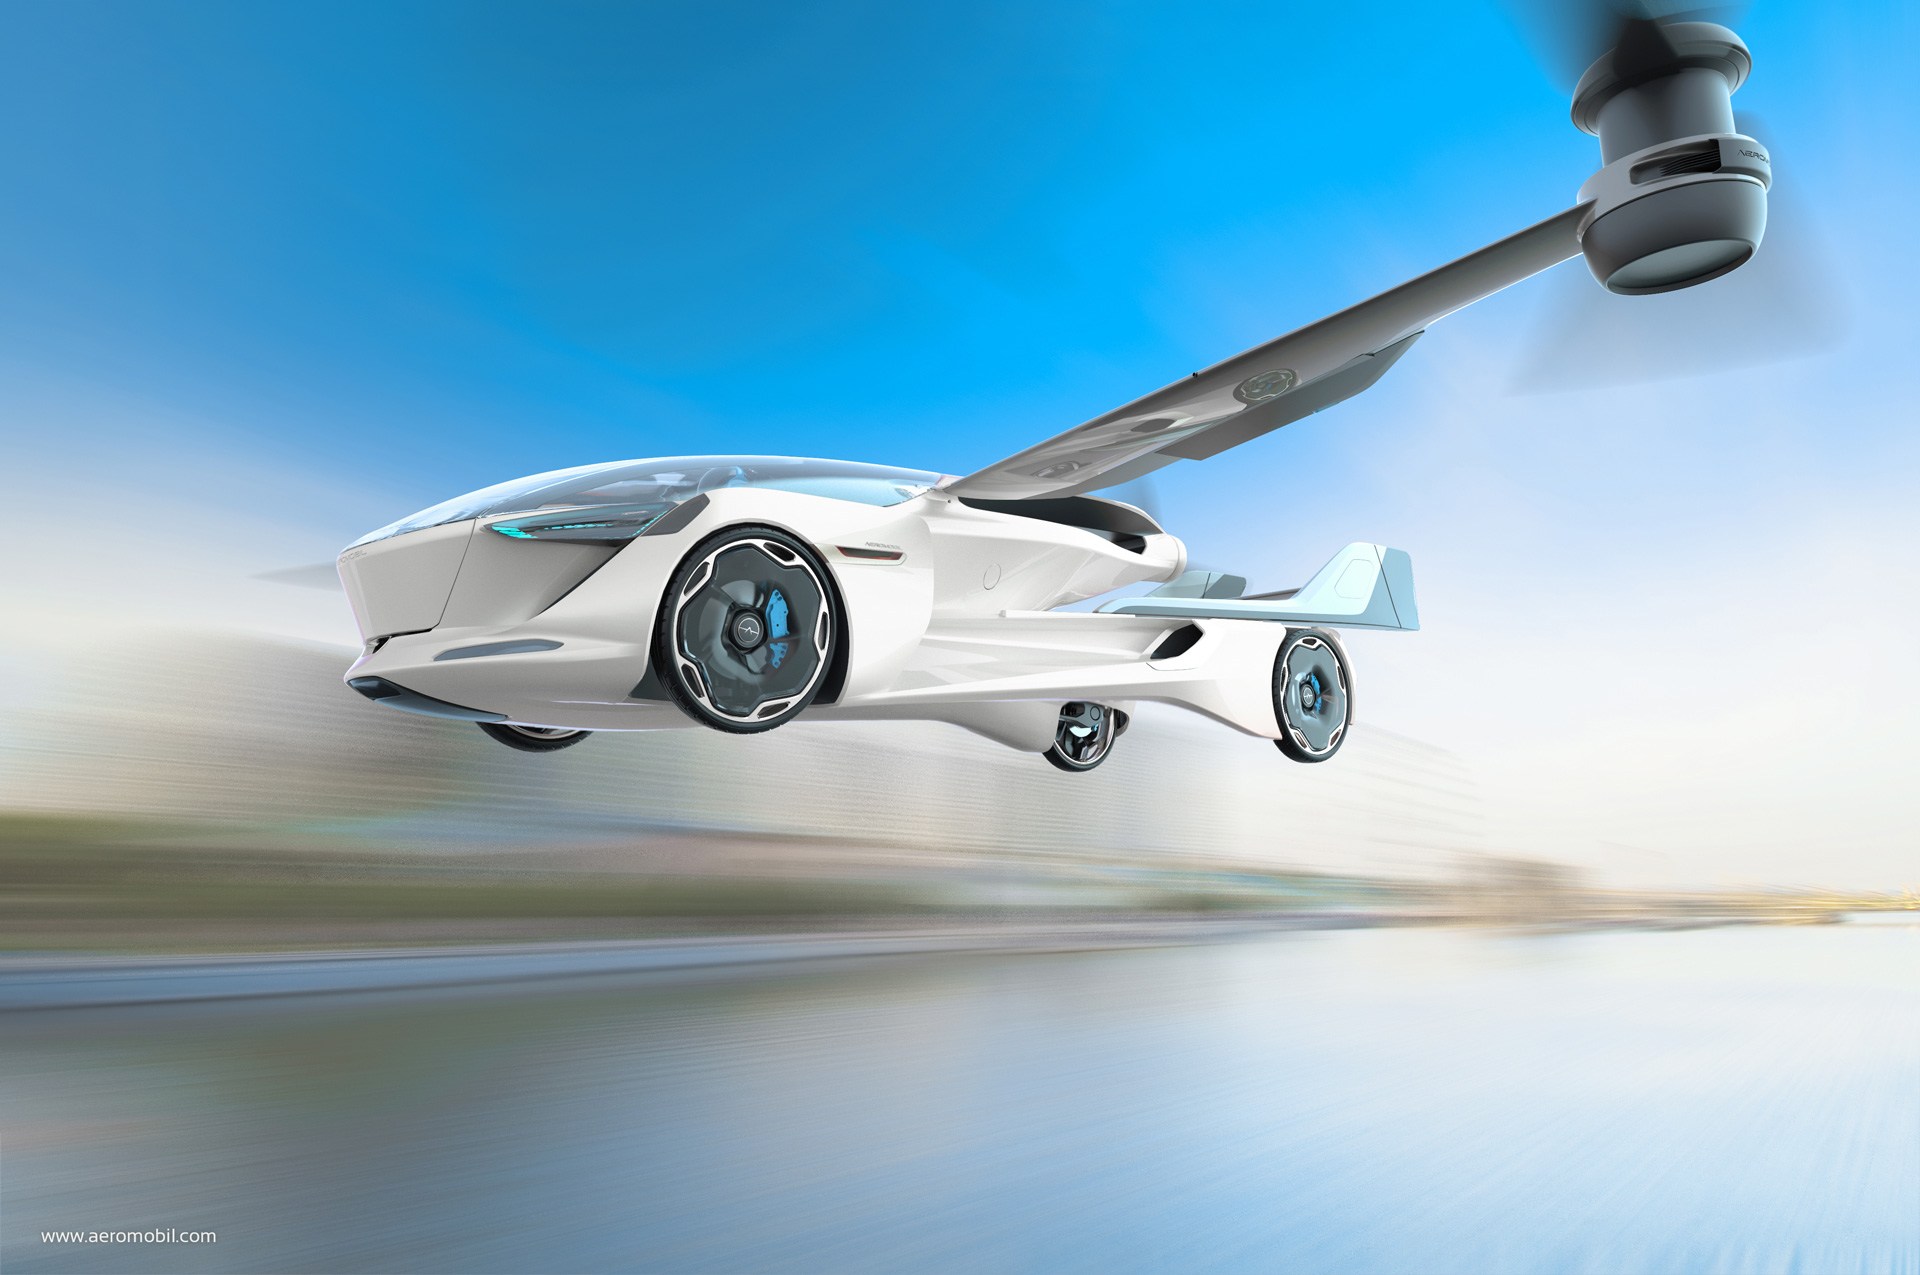 السيارة الطائرة إيروموبيل VTOL 5.0 تكشف نفسها من المستقبل 10